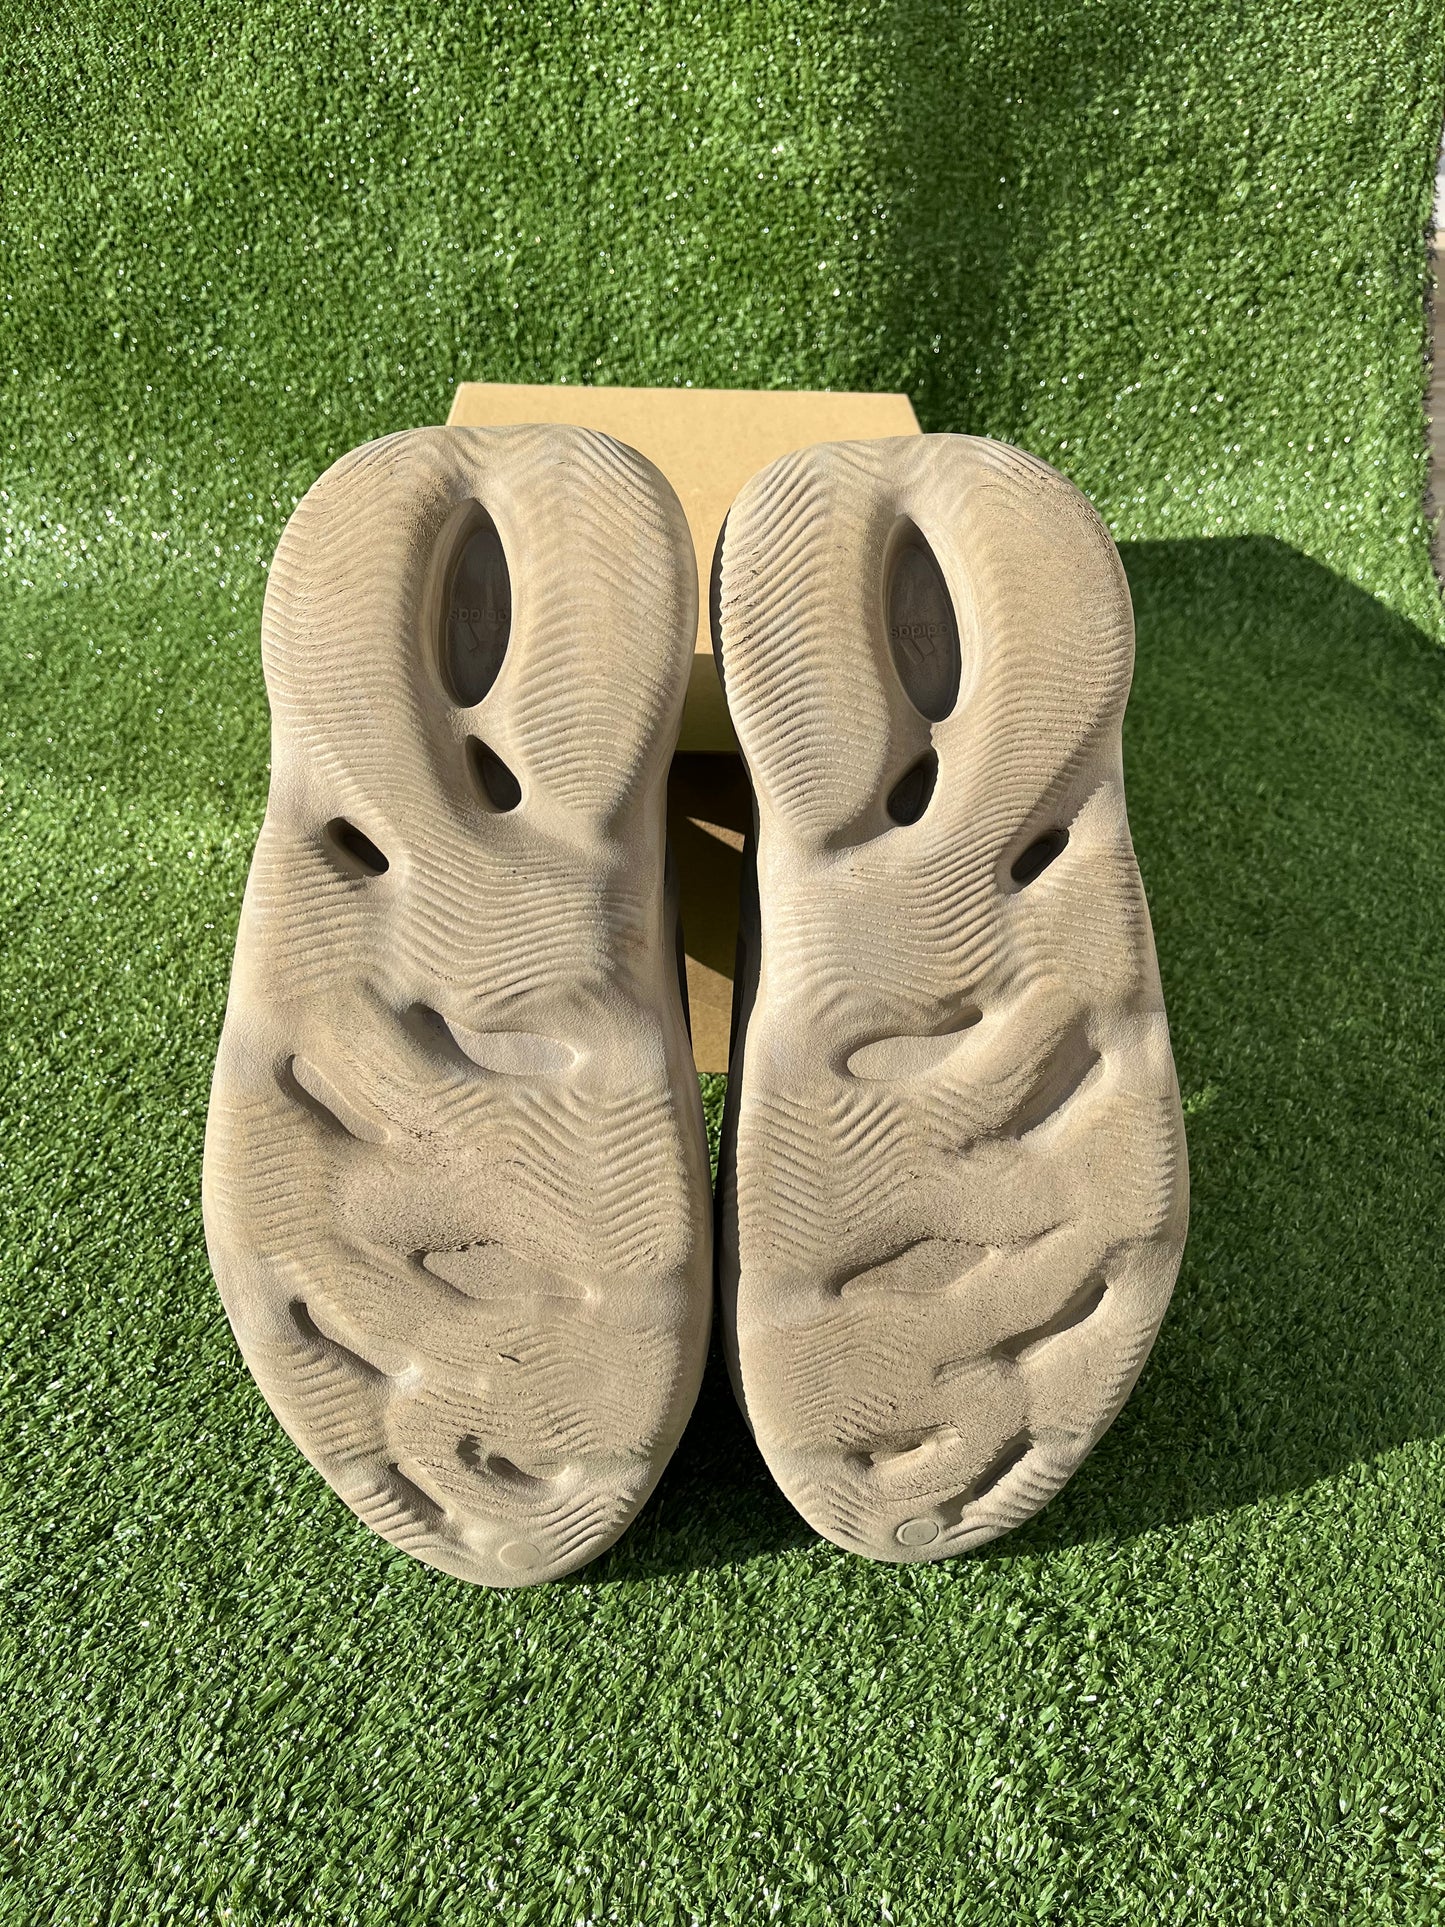 Yeezy Foam Runner - Stone Sage [US13-USED]